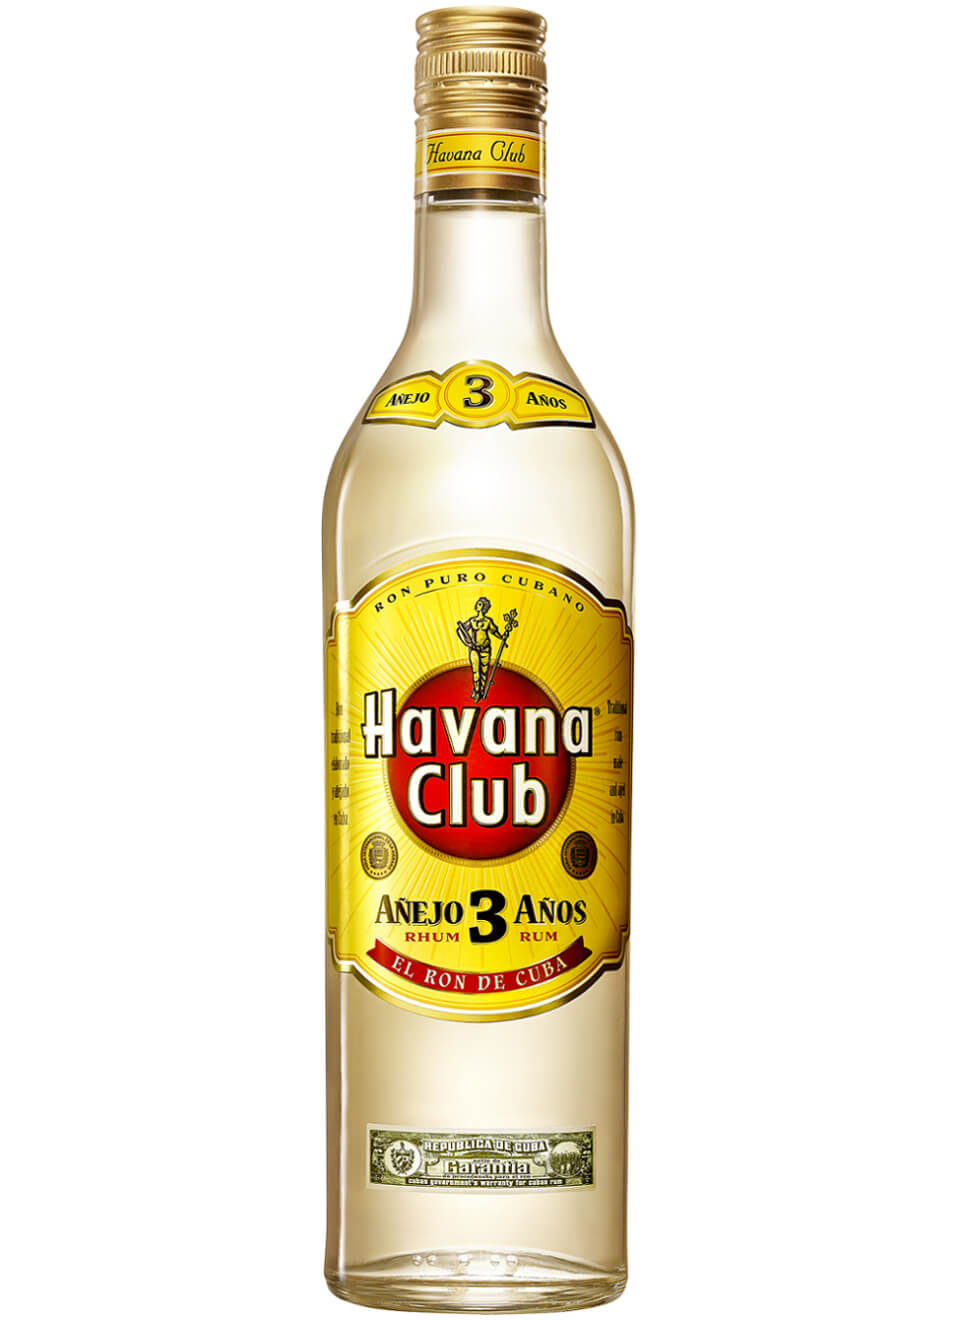 Havana Club Anejo 3 Anos Rum 1 L